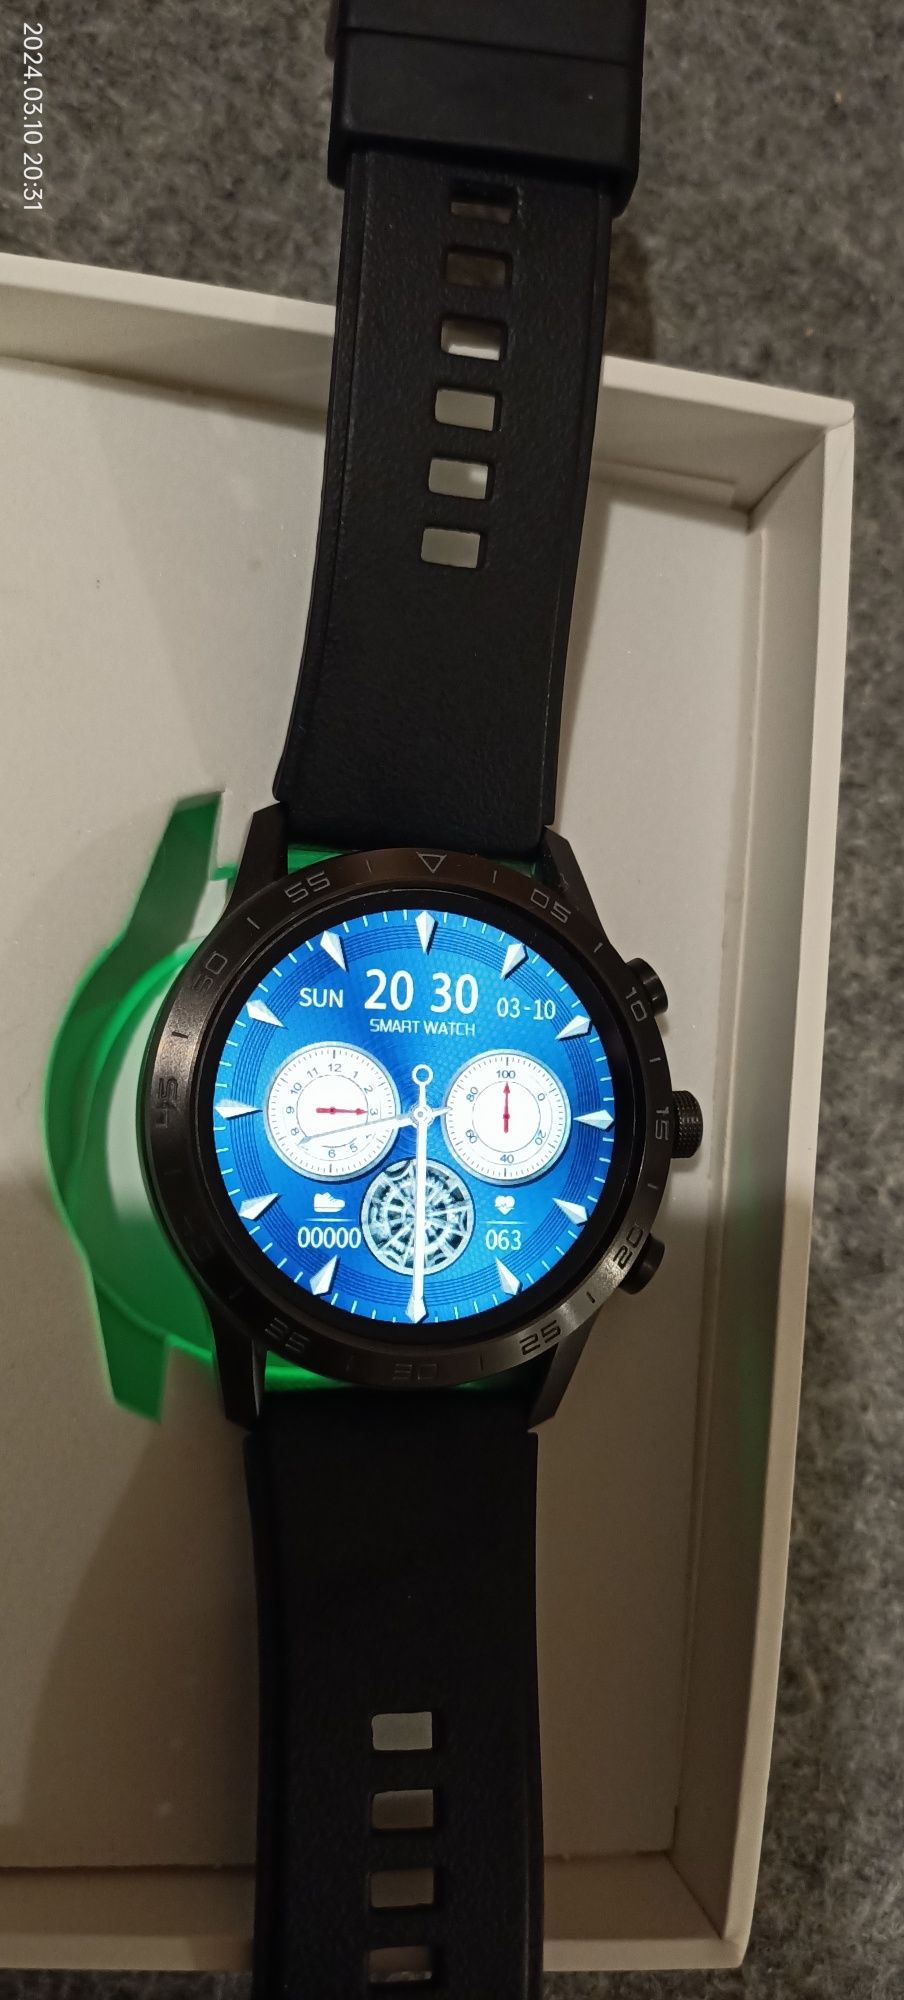 Smartwatch DT 70 idealny na prezent